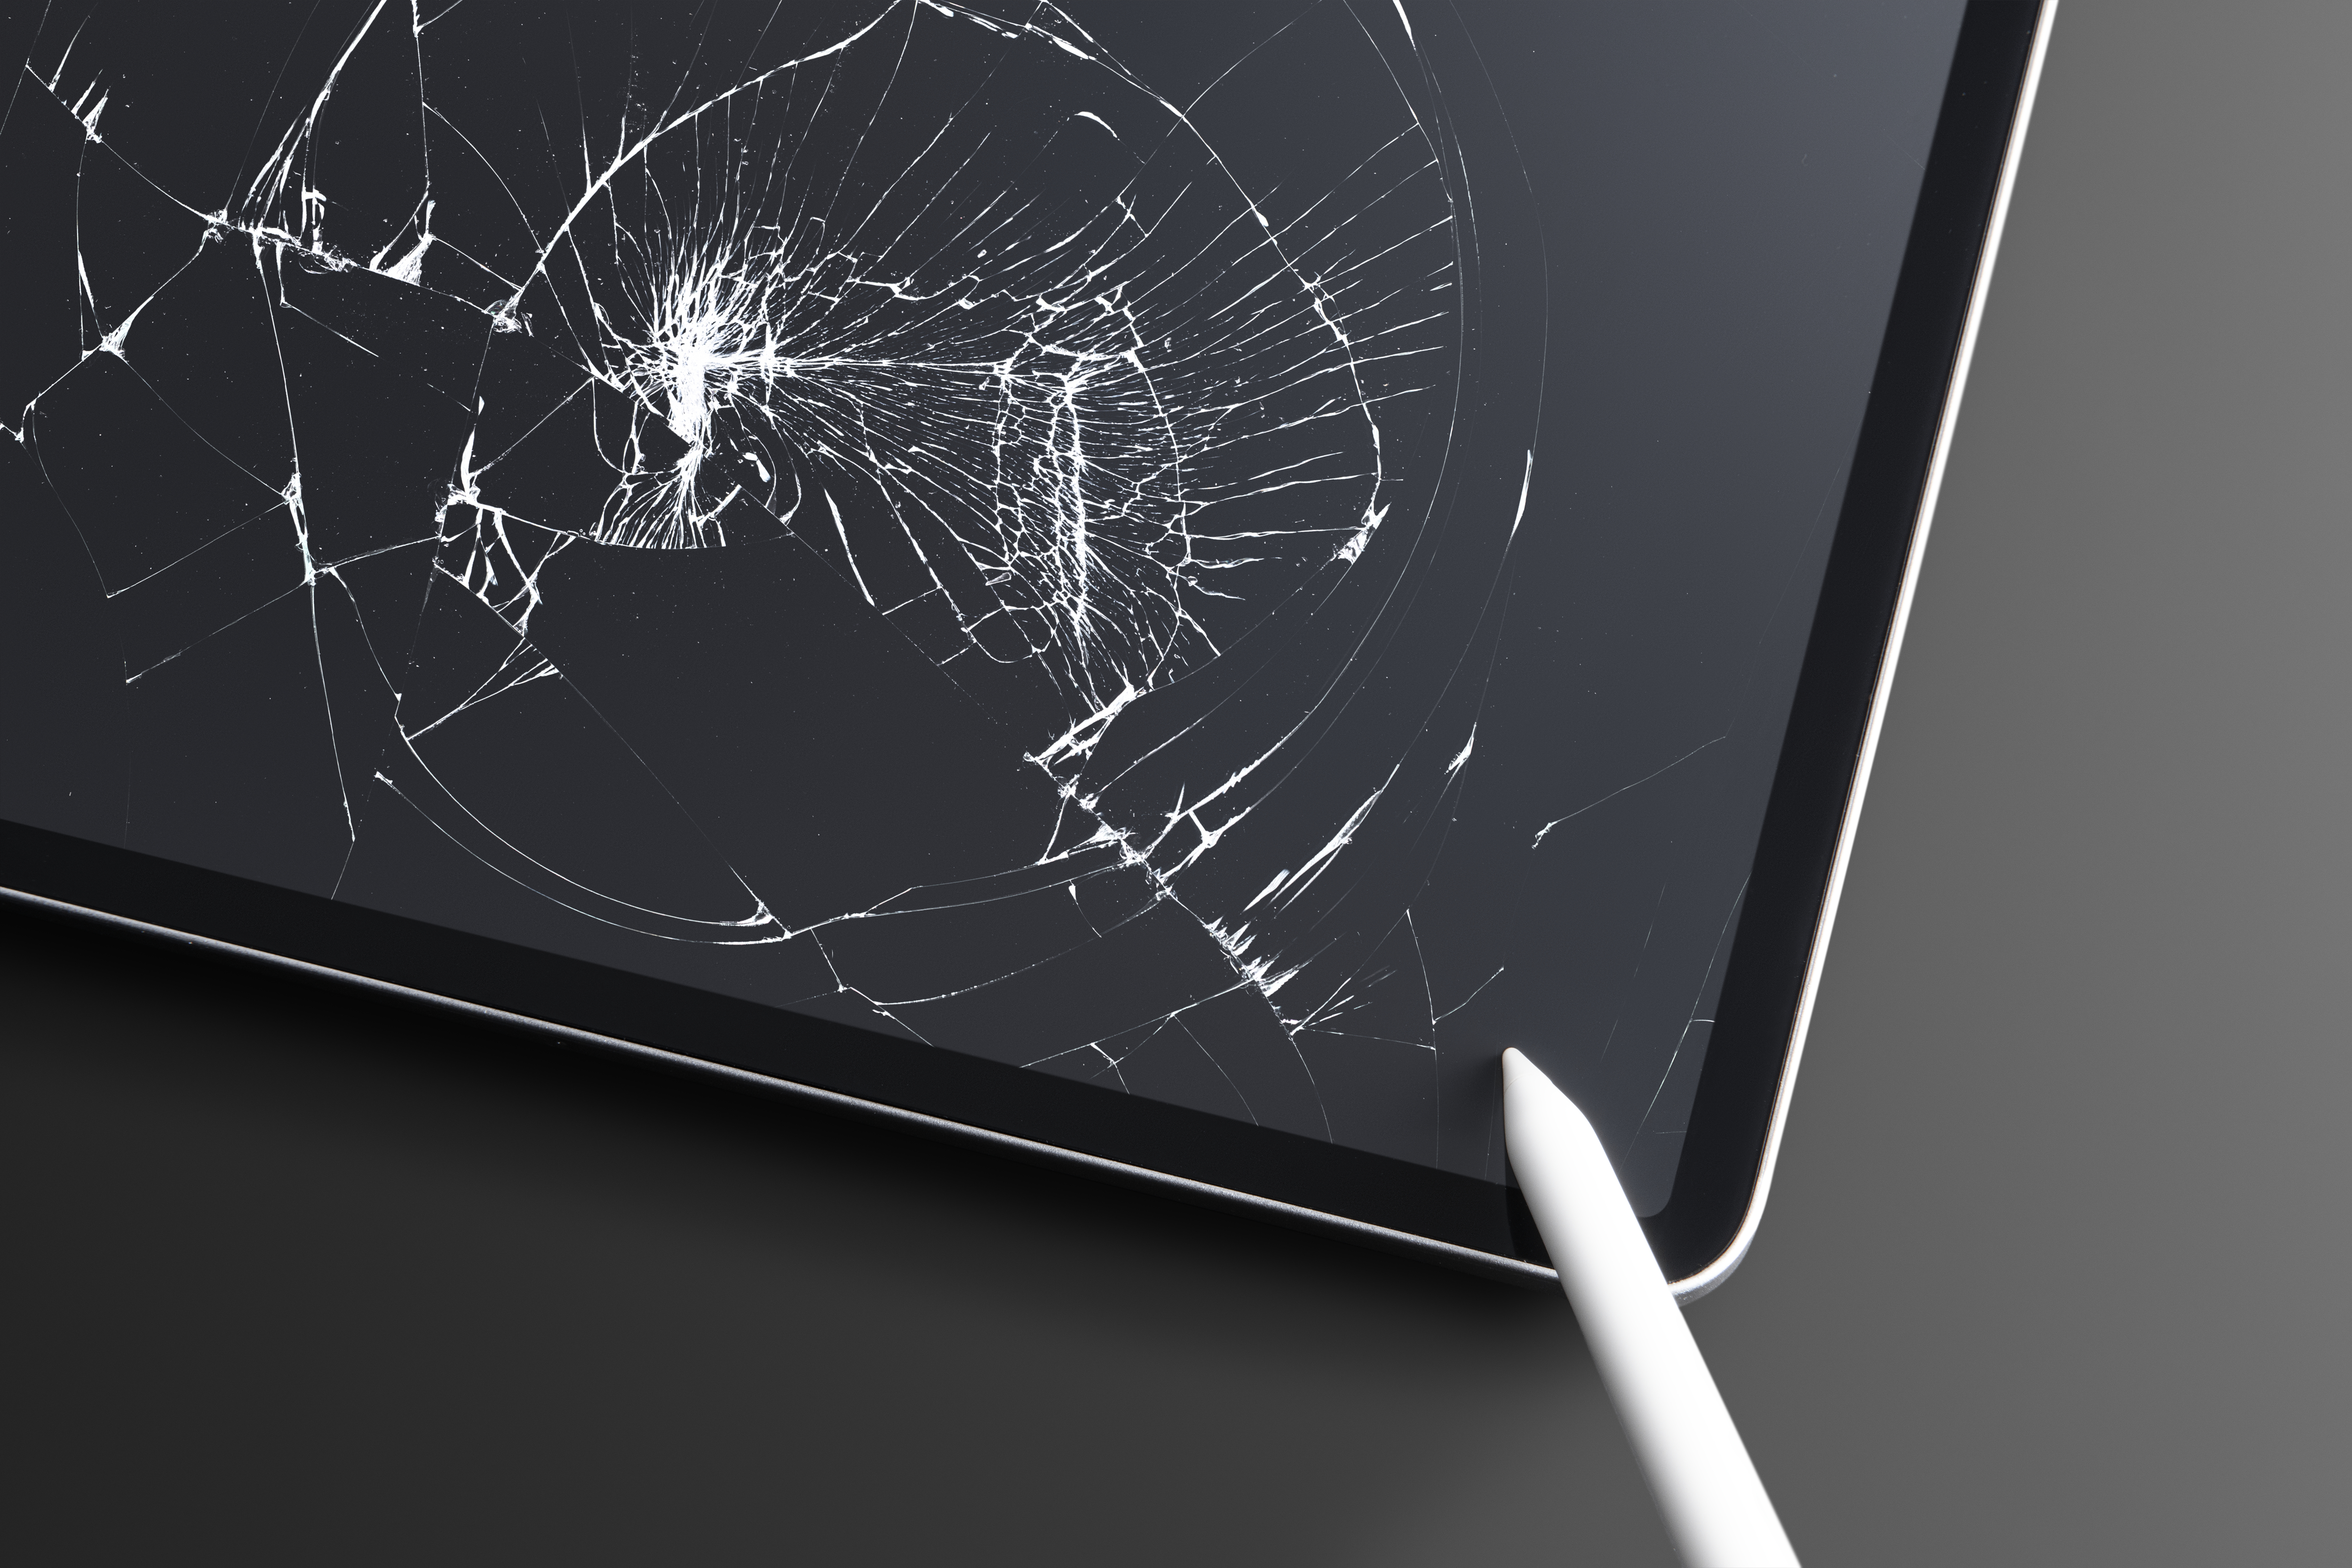 Broken tablet with cracked screen broken glass